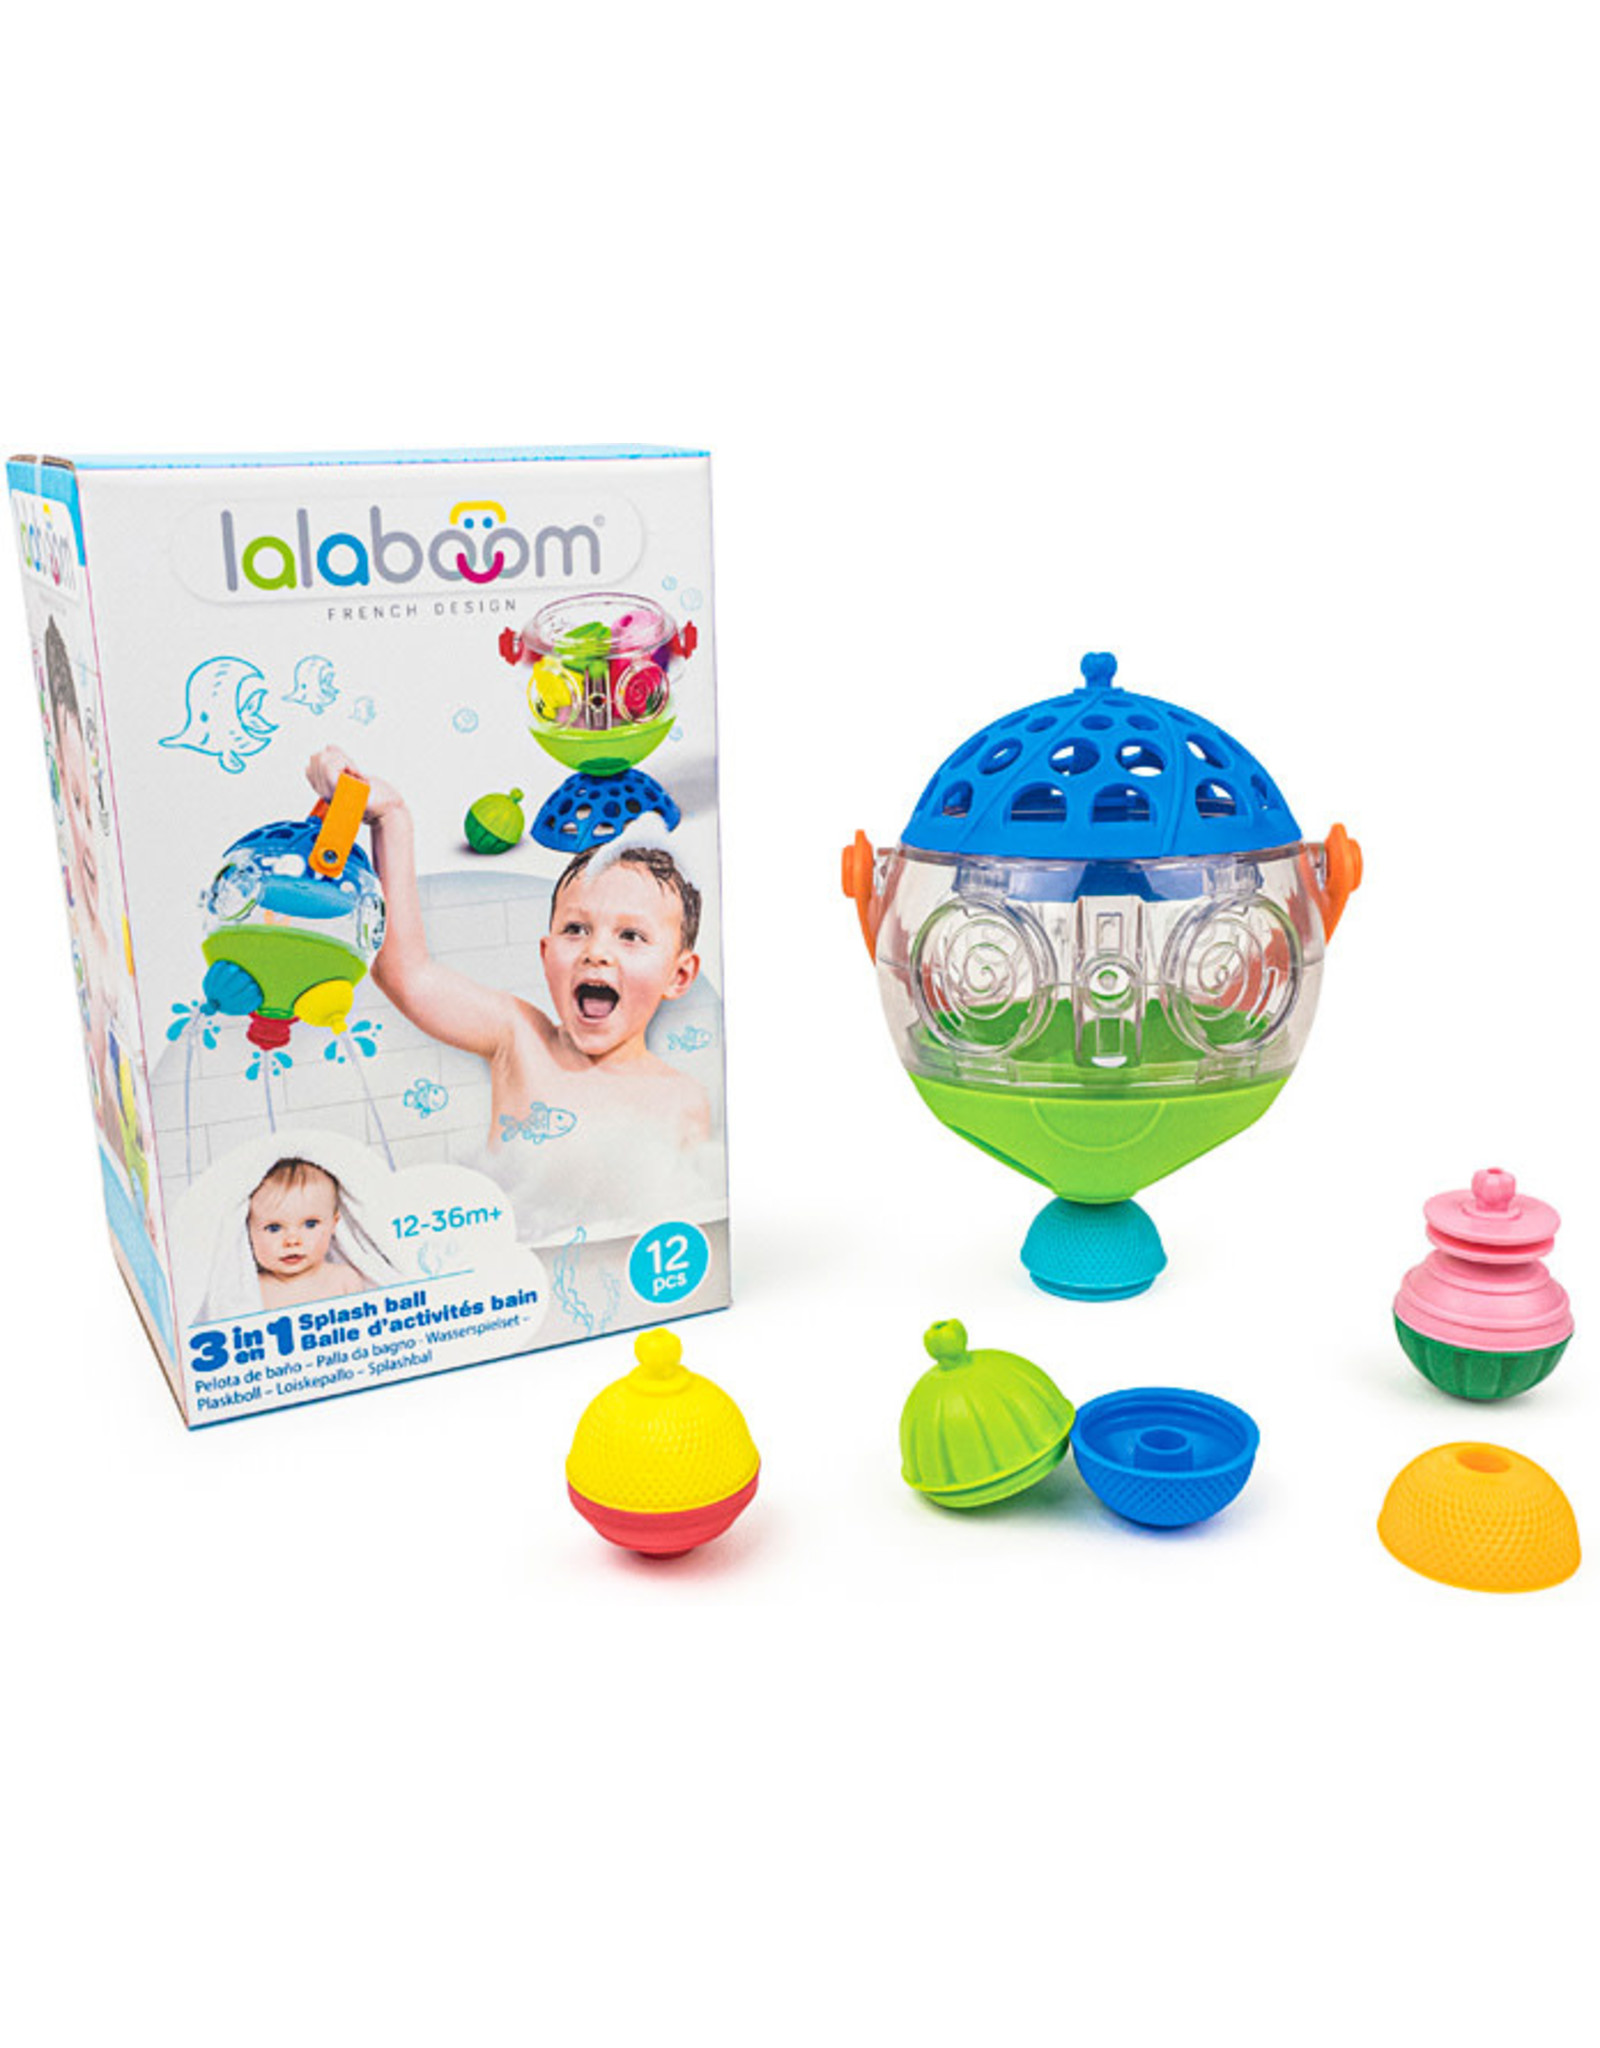 Lalaboom Lalaboom 3 in 1 Splash Ball, 12 pcs.